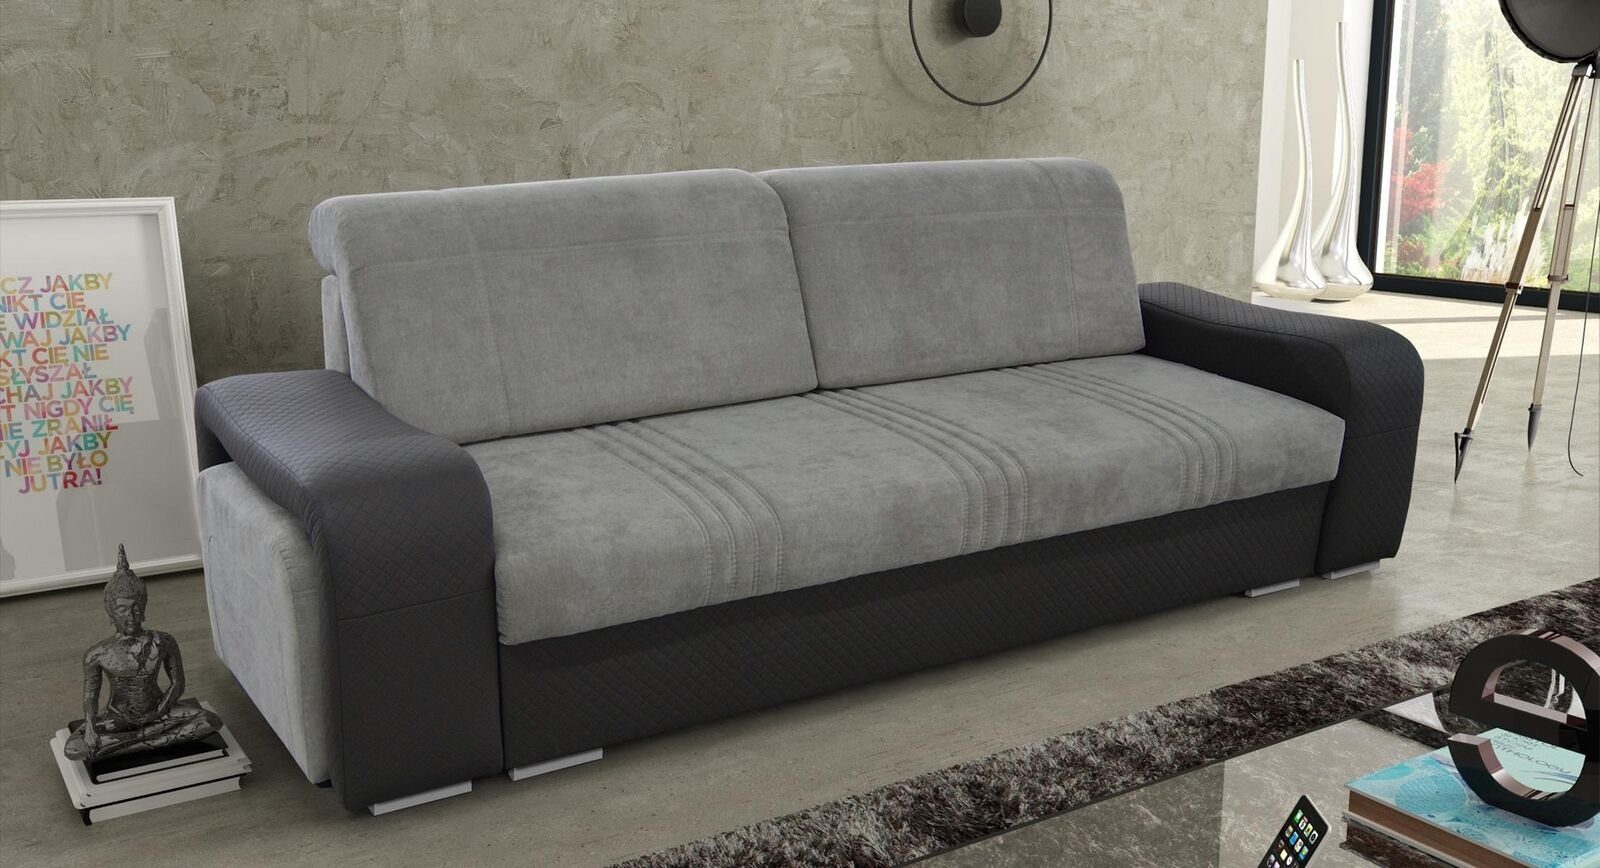 JVmoebel Sofa, Sofas Viersitzer Design Sofa 4 Sitzer Möbel Wohnzimmer Couch